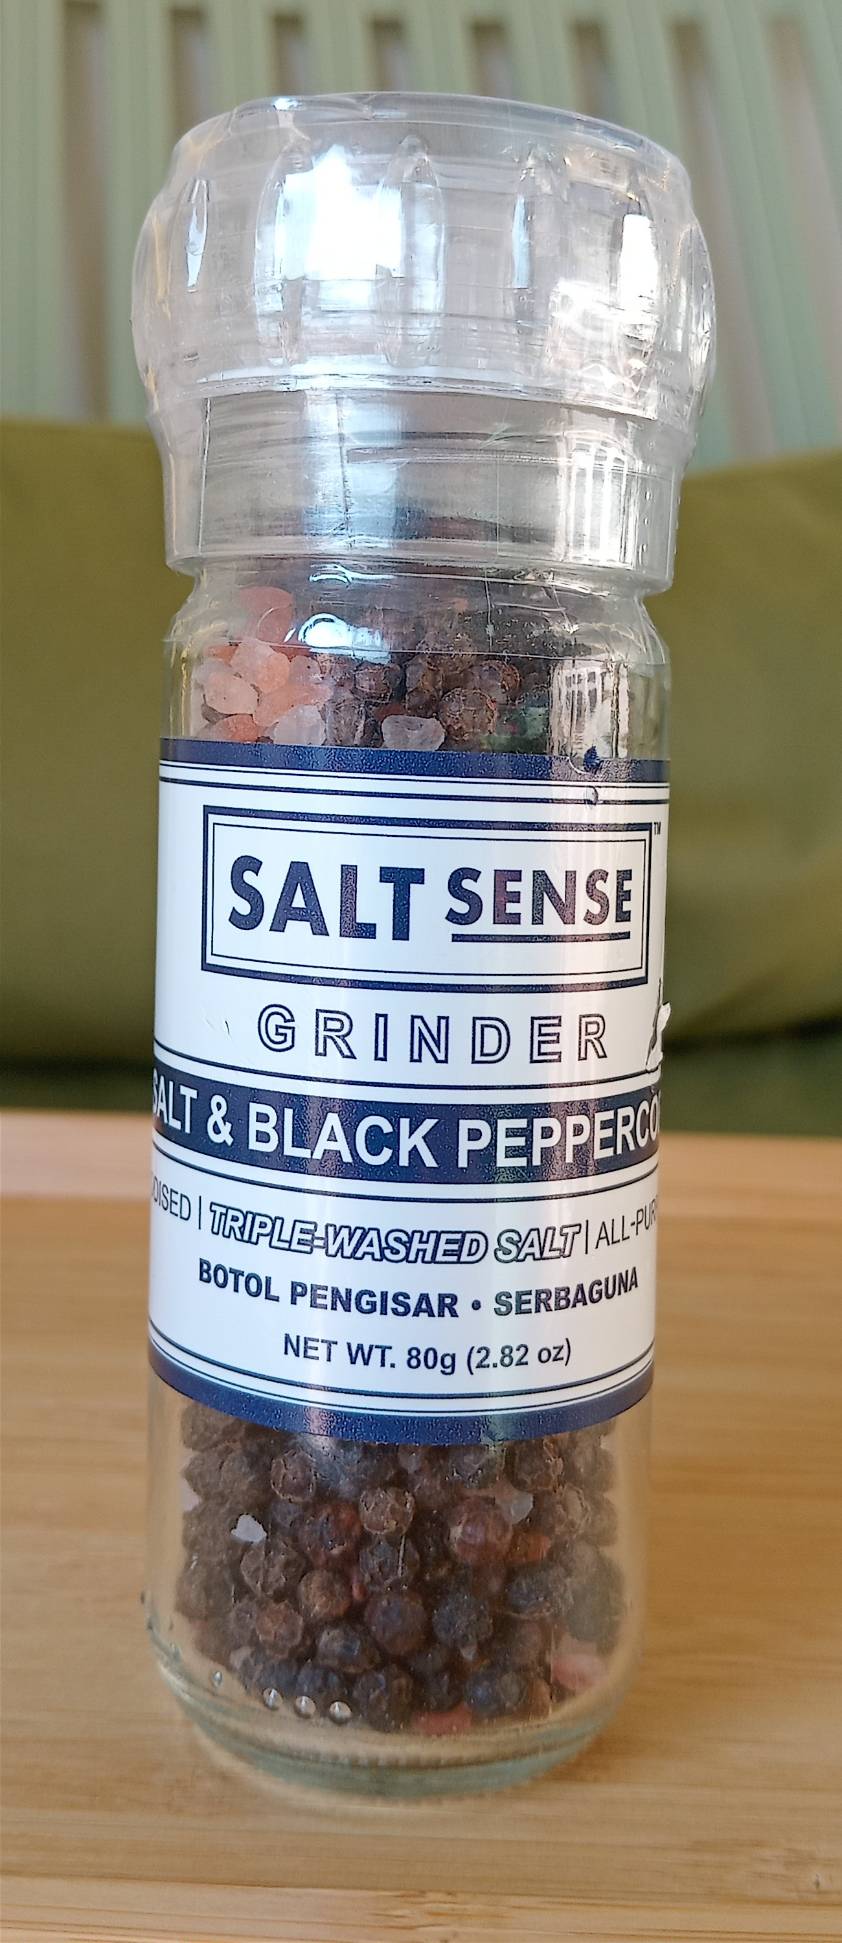 Salt & Black Peppercorn-Grunder-, Salt Sense 80g